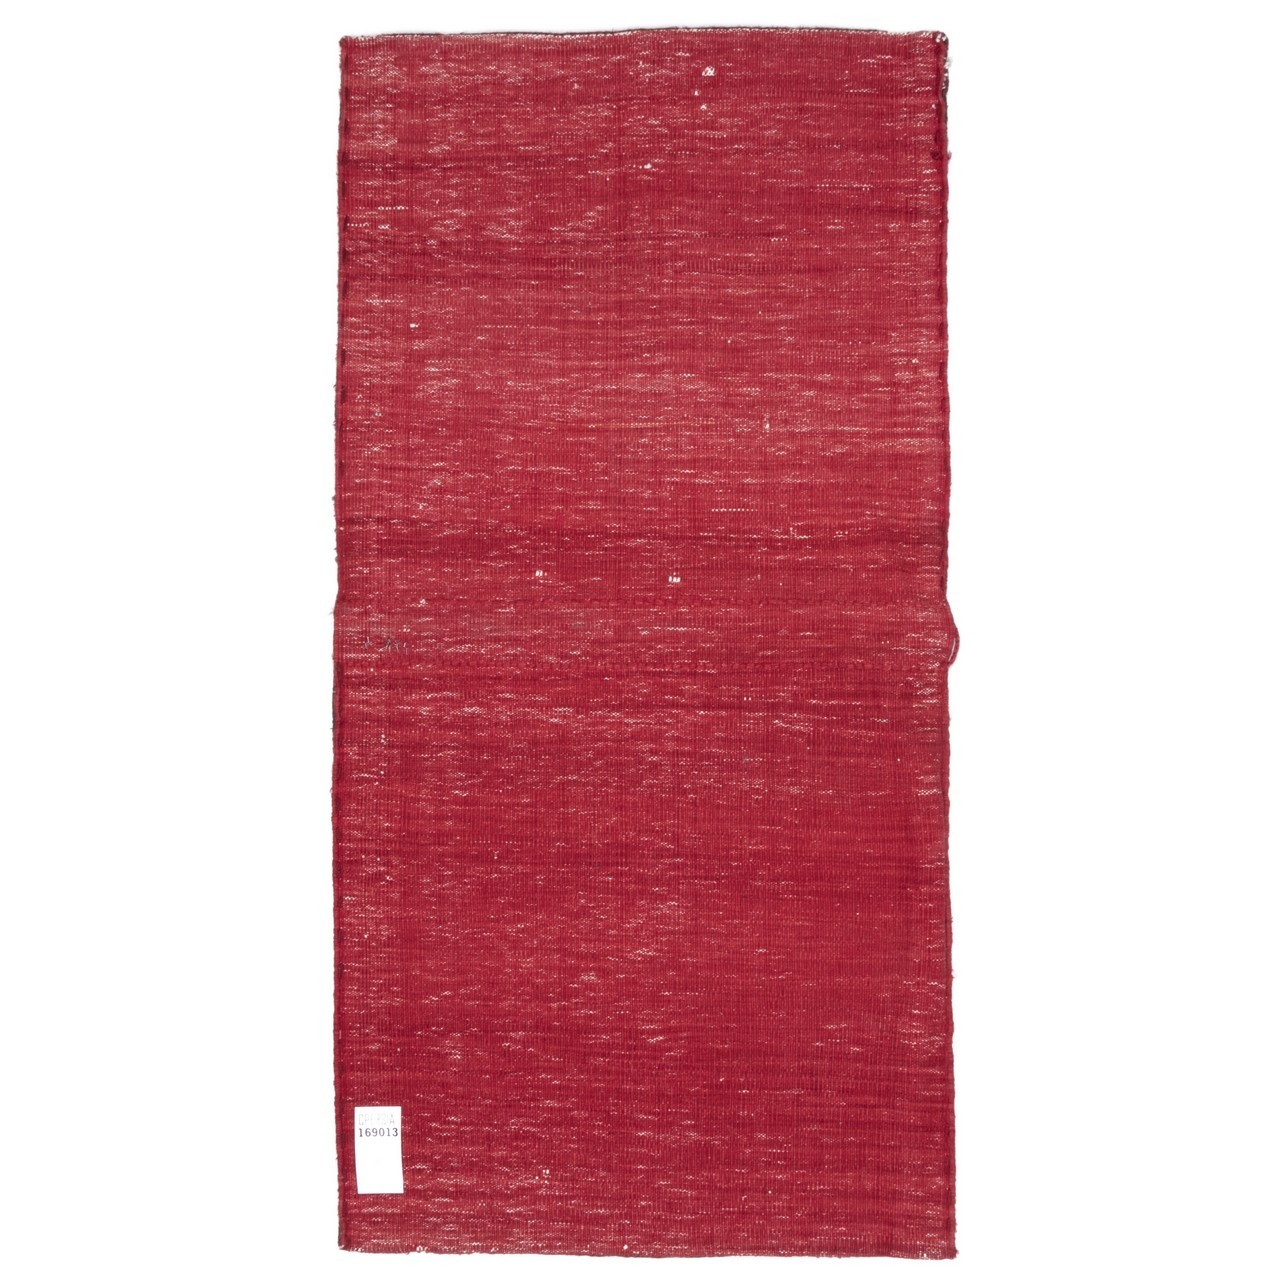 خورجین دستباف قدیمی قشقایی کد 169013